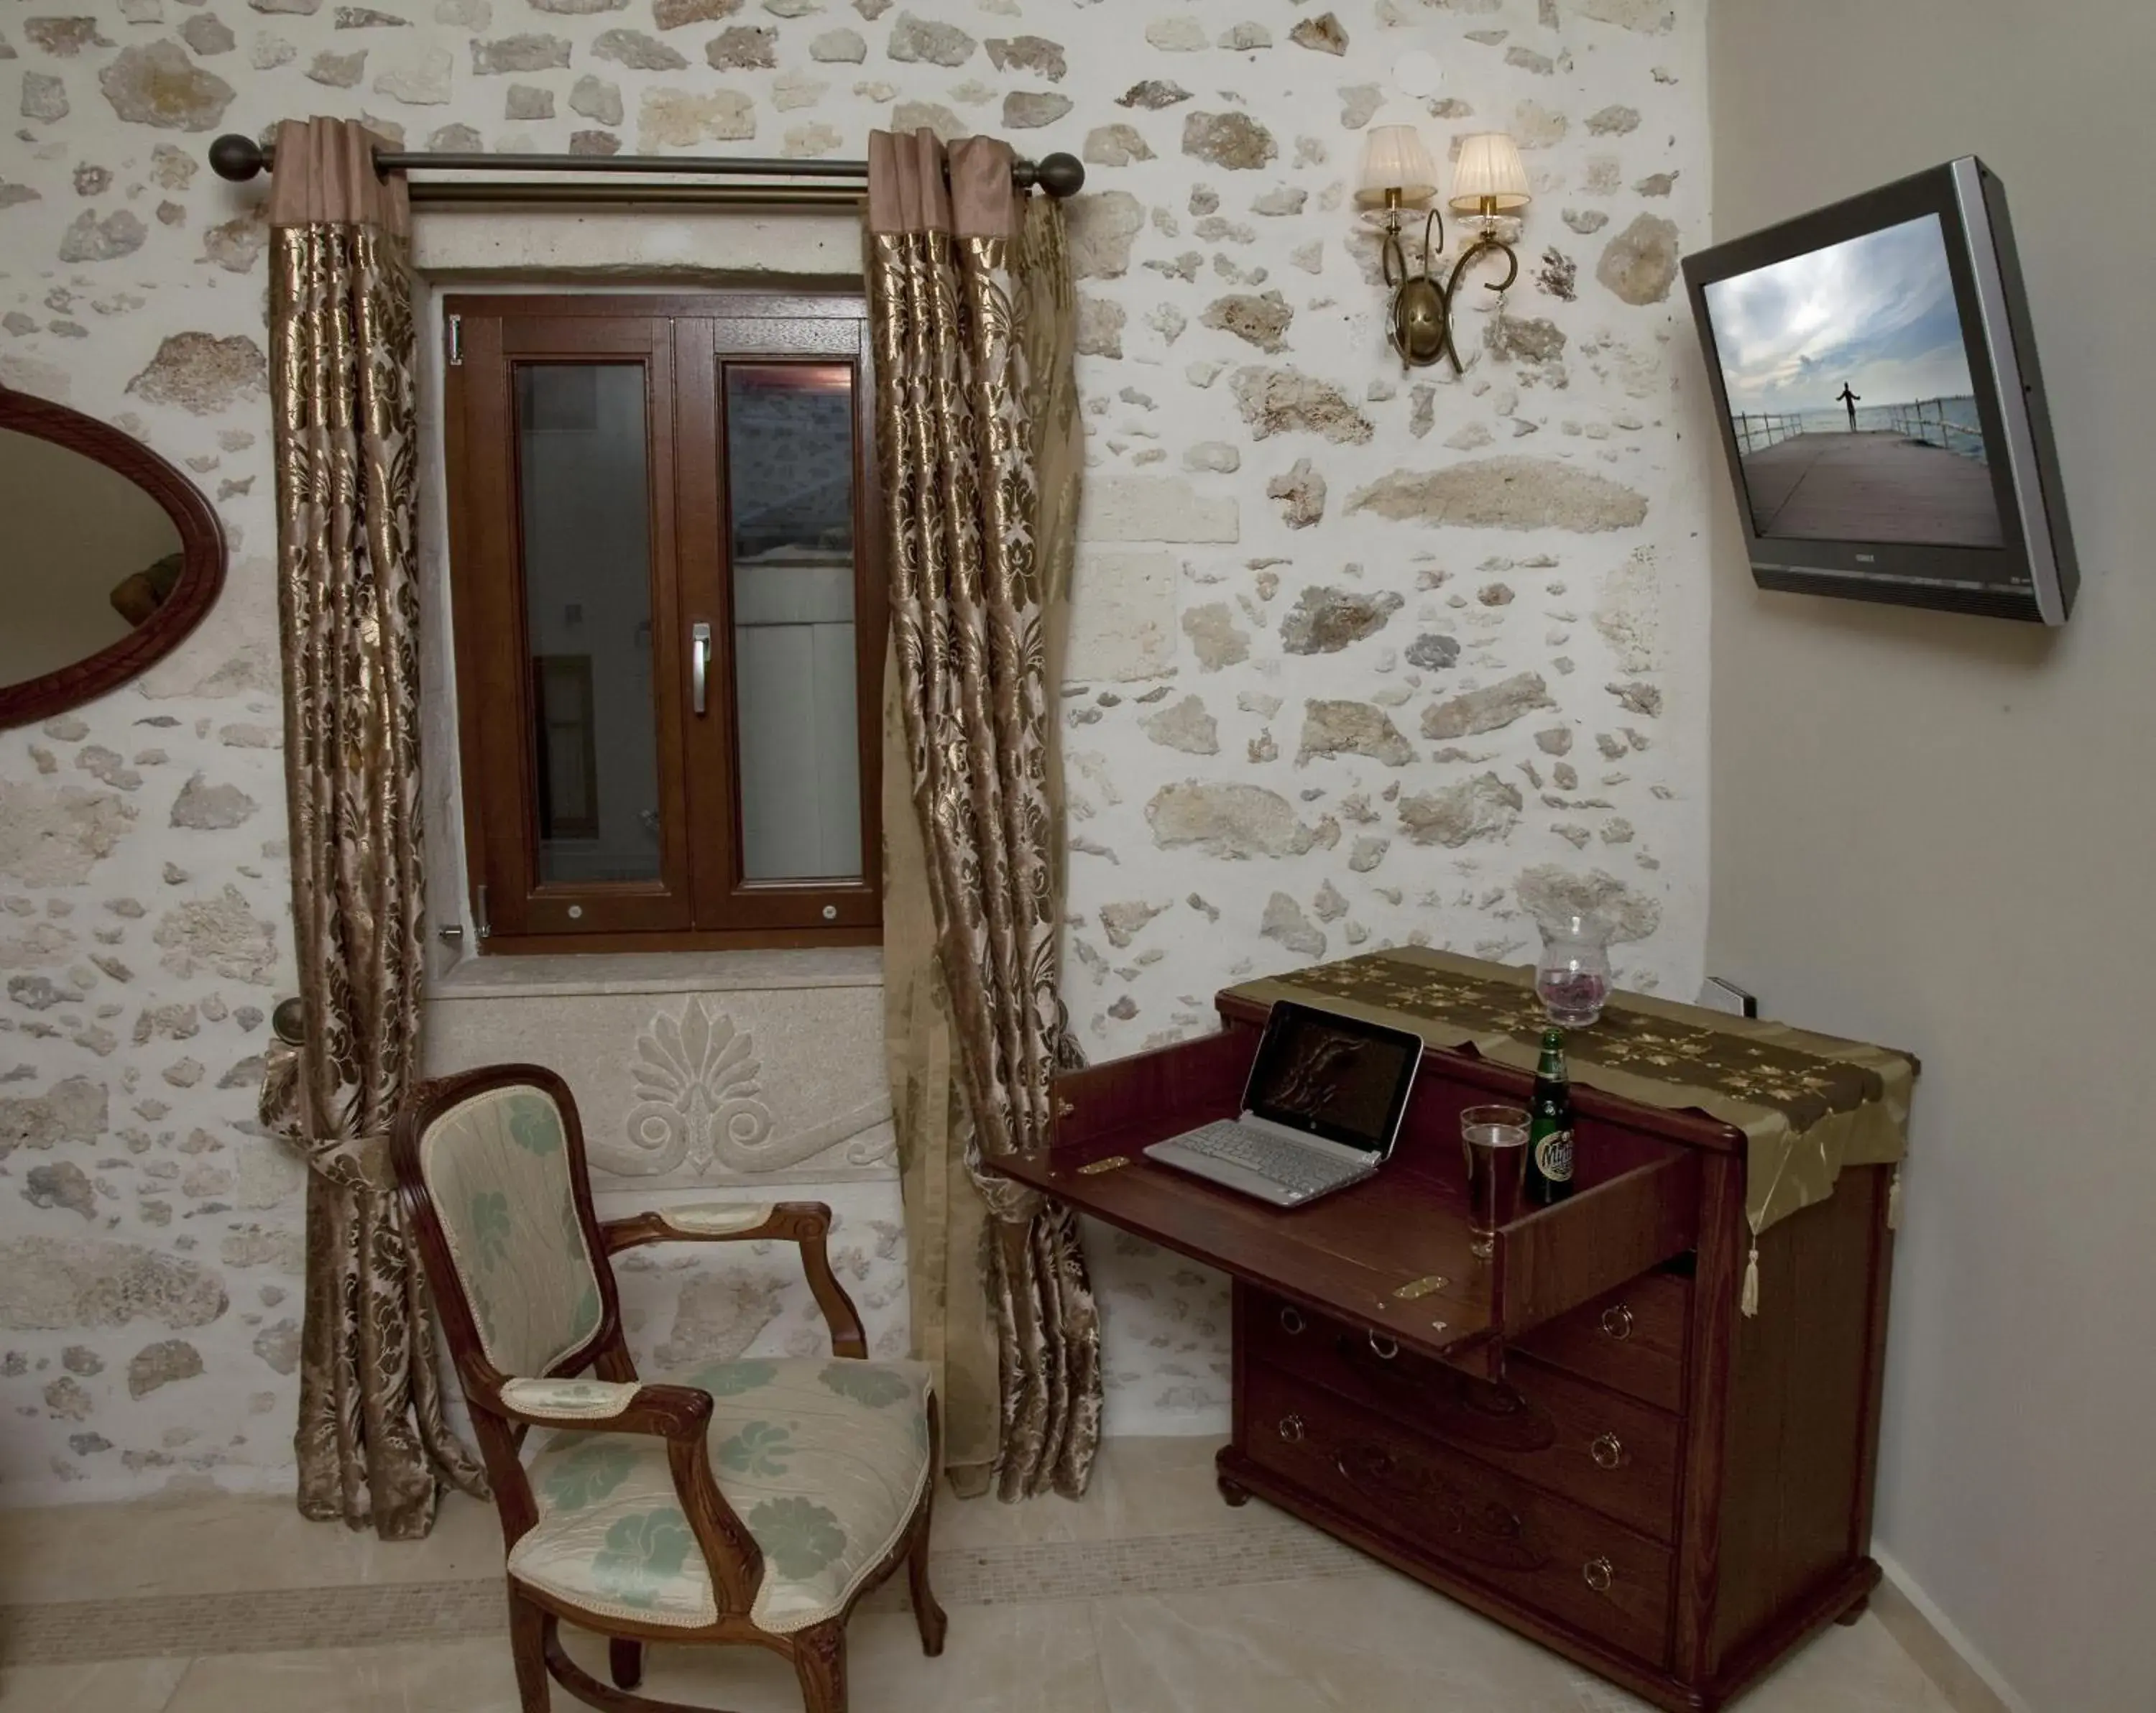 Decorative detail, Seating Area in Antica Dimora Suites